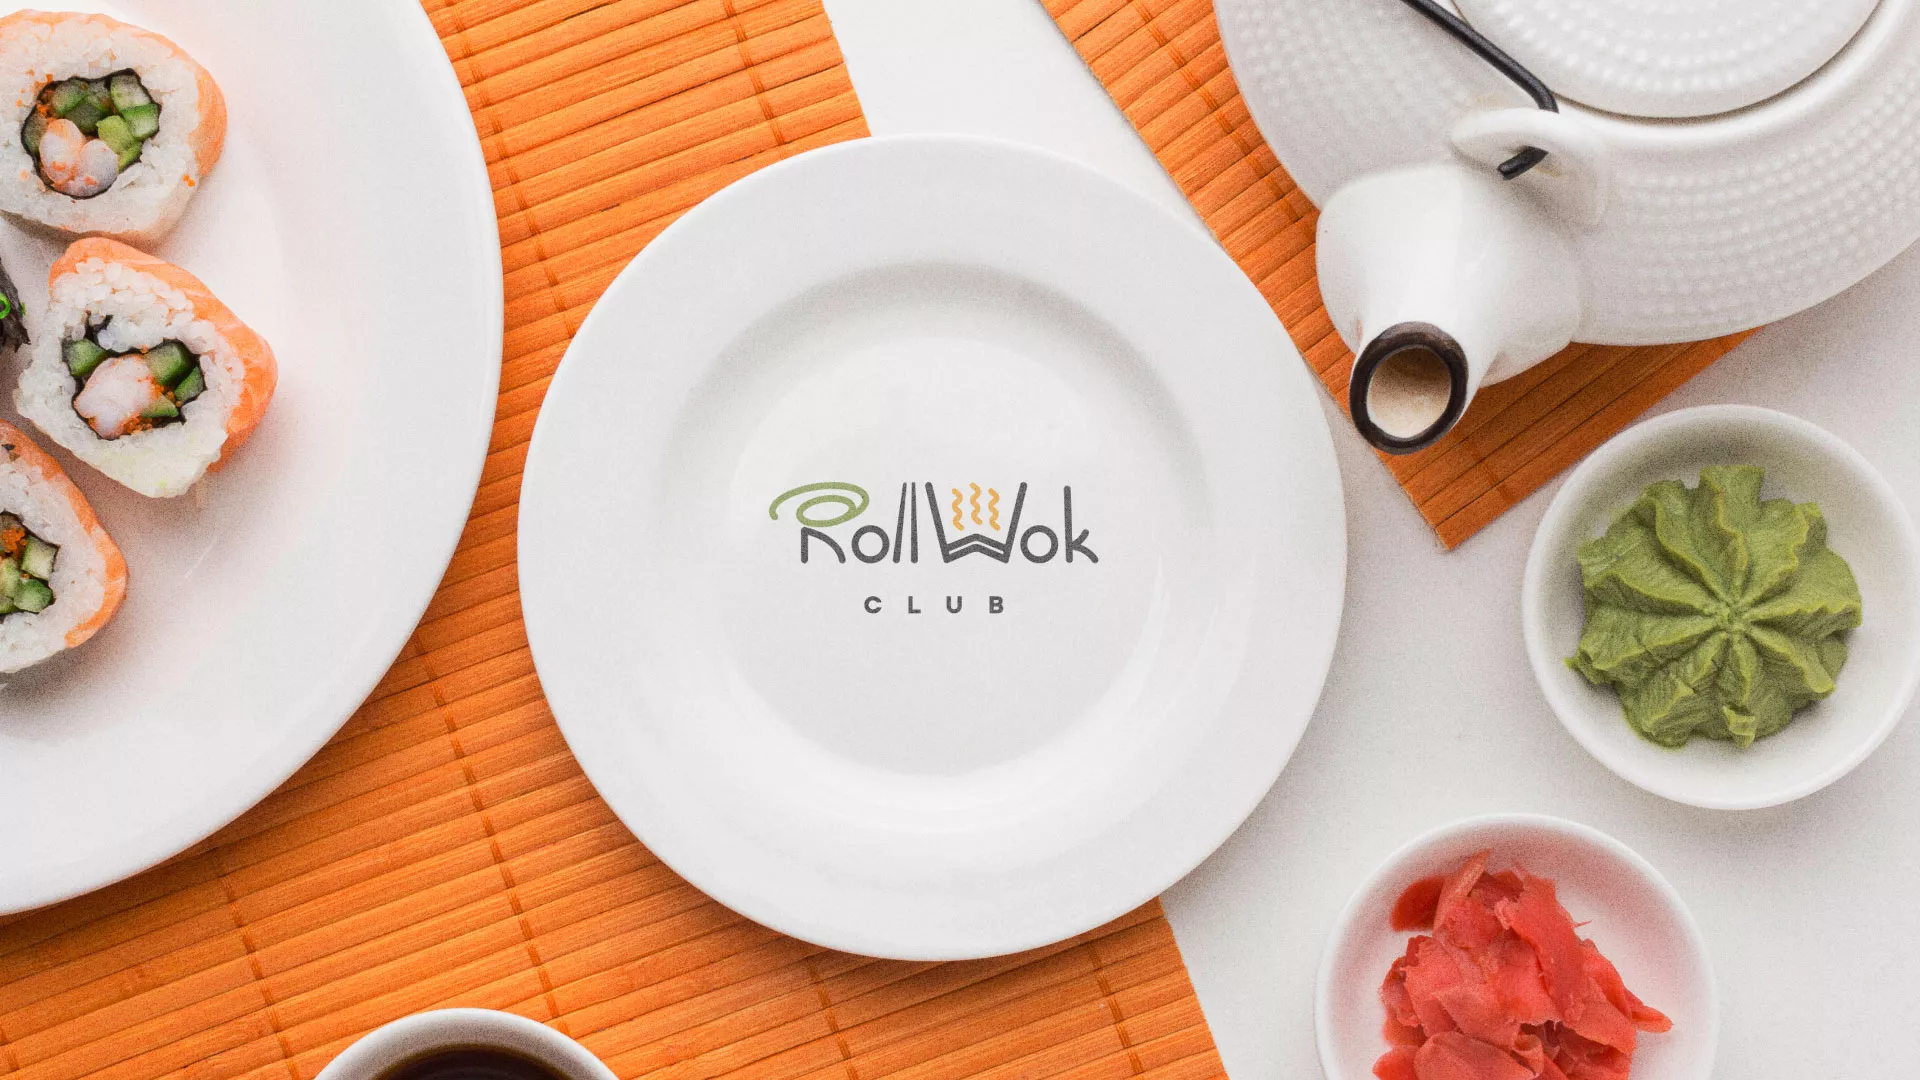 Разработка логотипа и фирменного стиля суши-бара «Roll Wok Club» в Чегеме